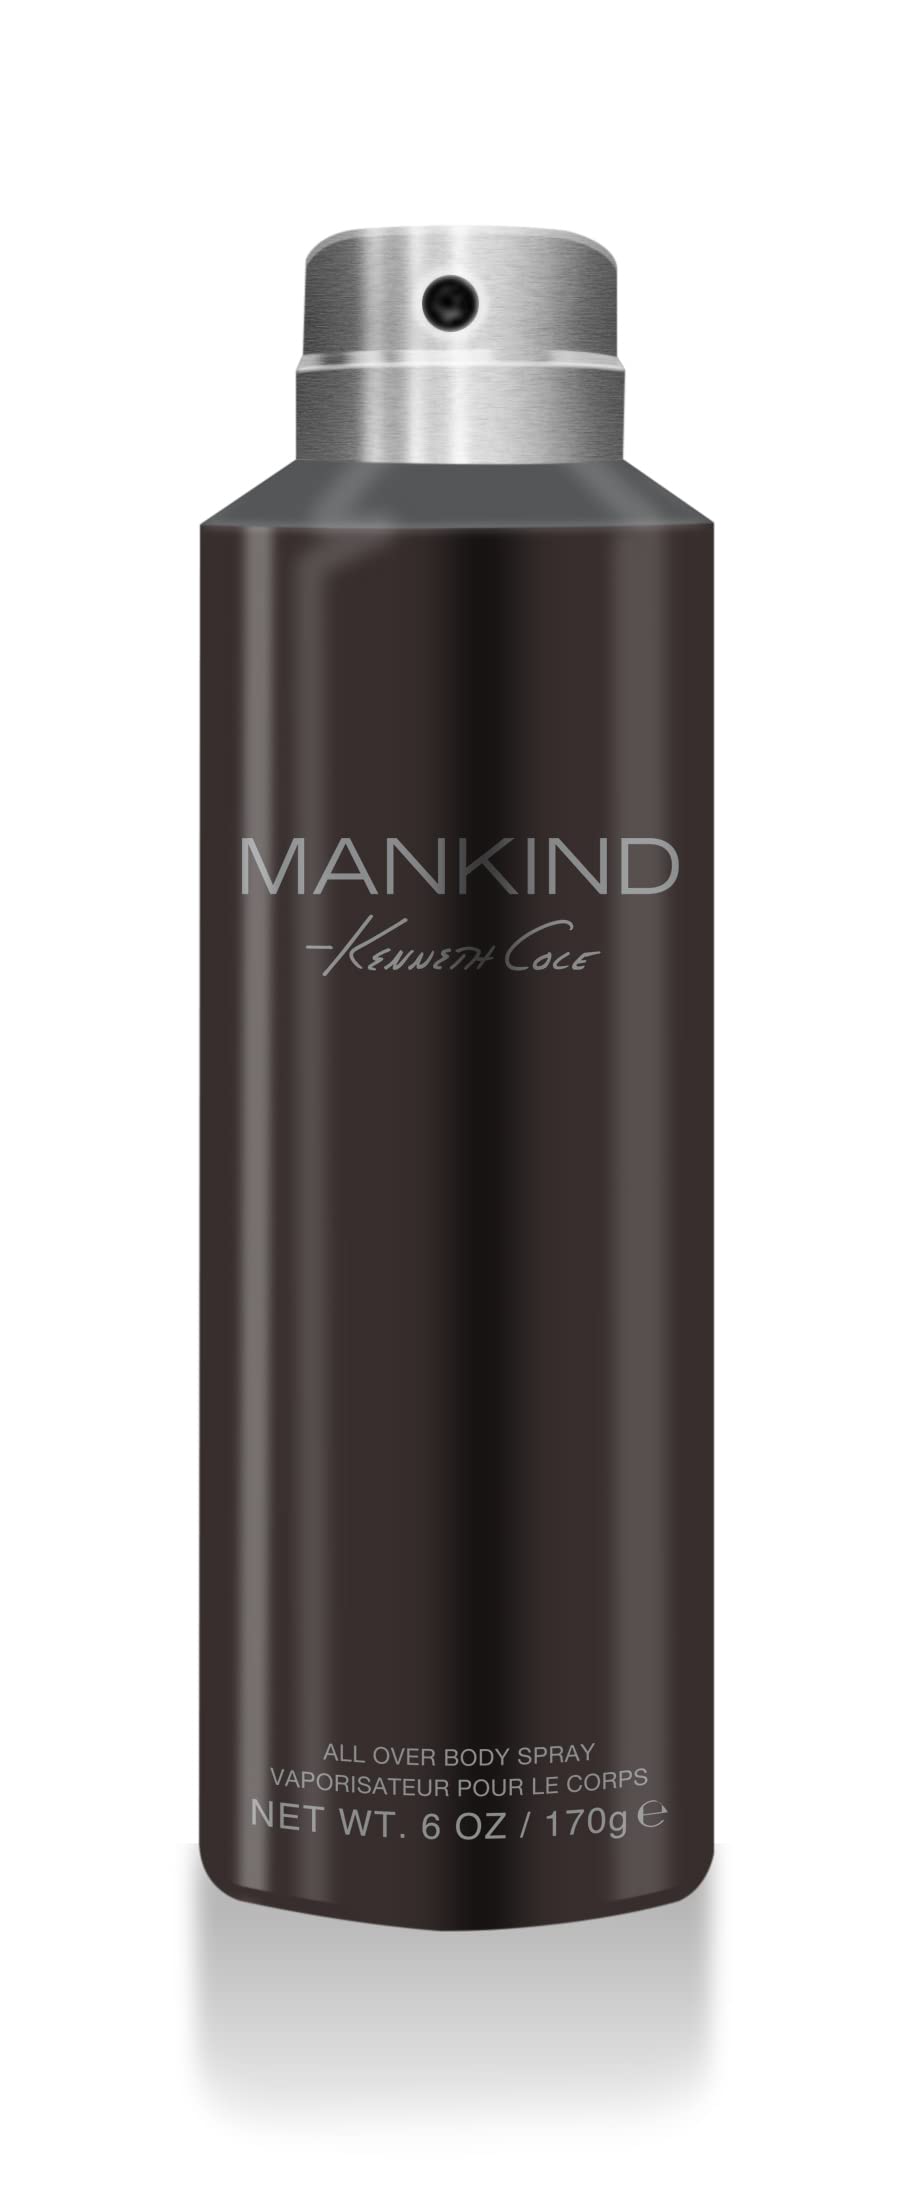 Kenneth Cole Mankind 170gm Body Spray for Men